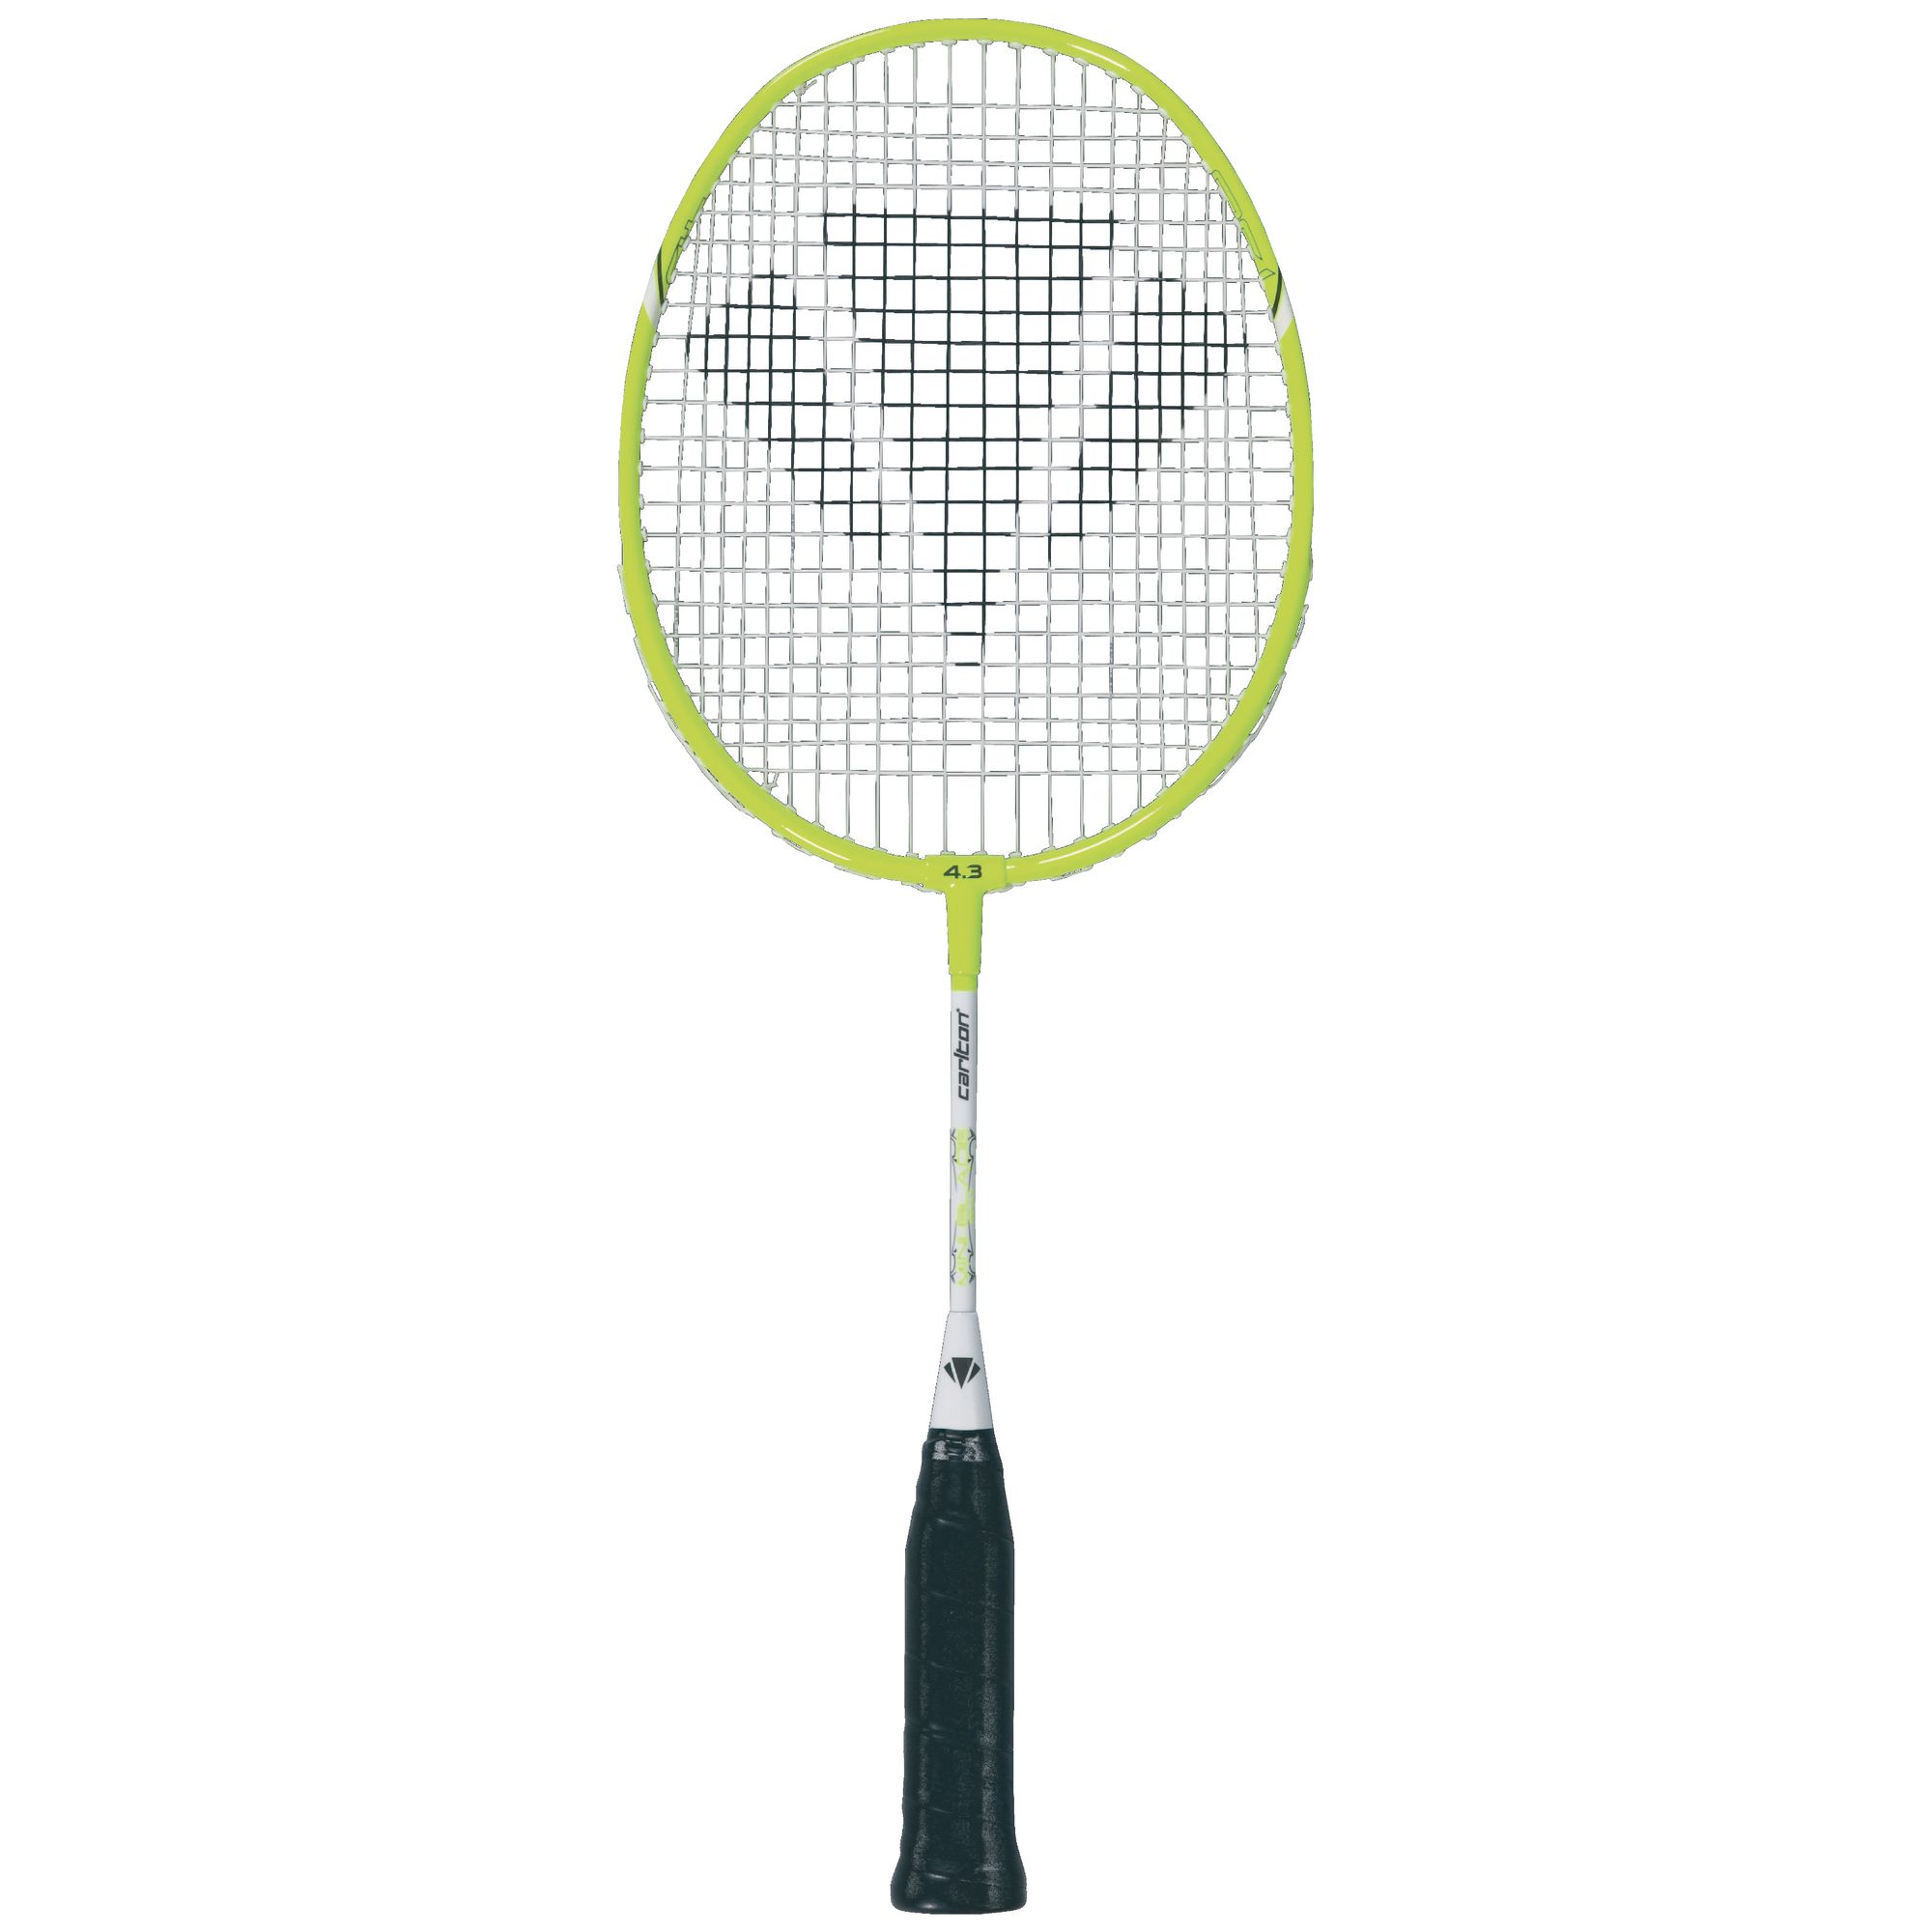 Freestanding Carlton Badminton Put Up Net 